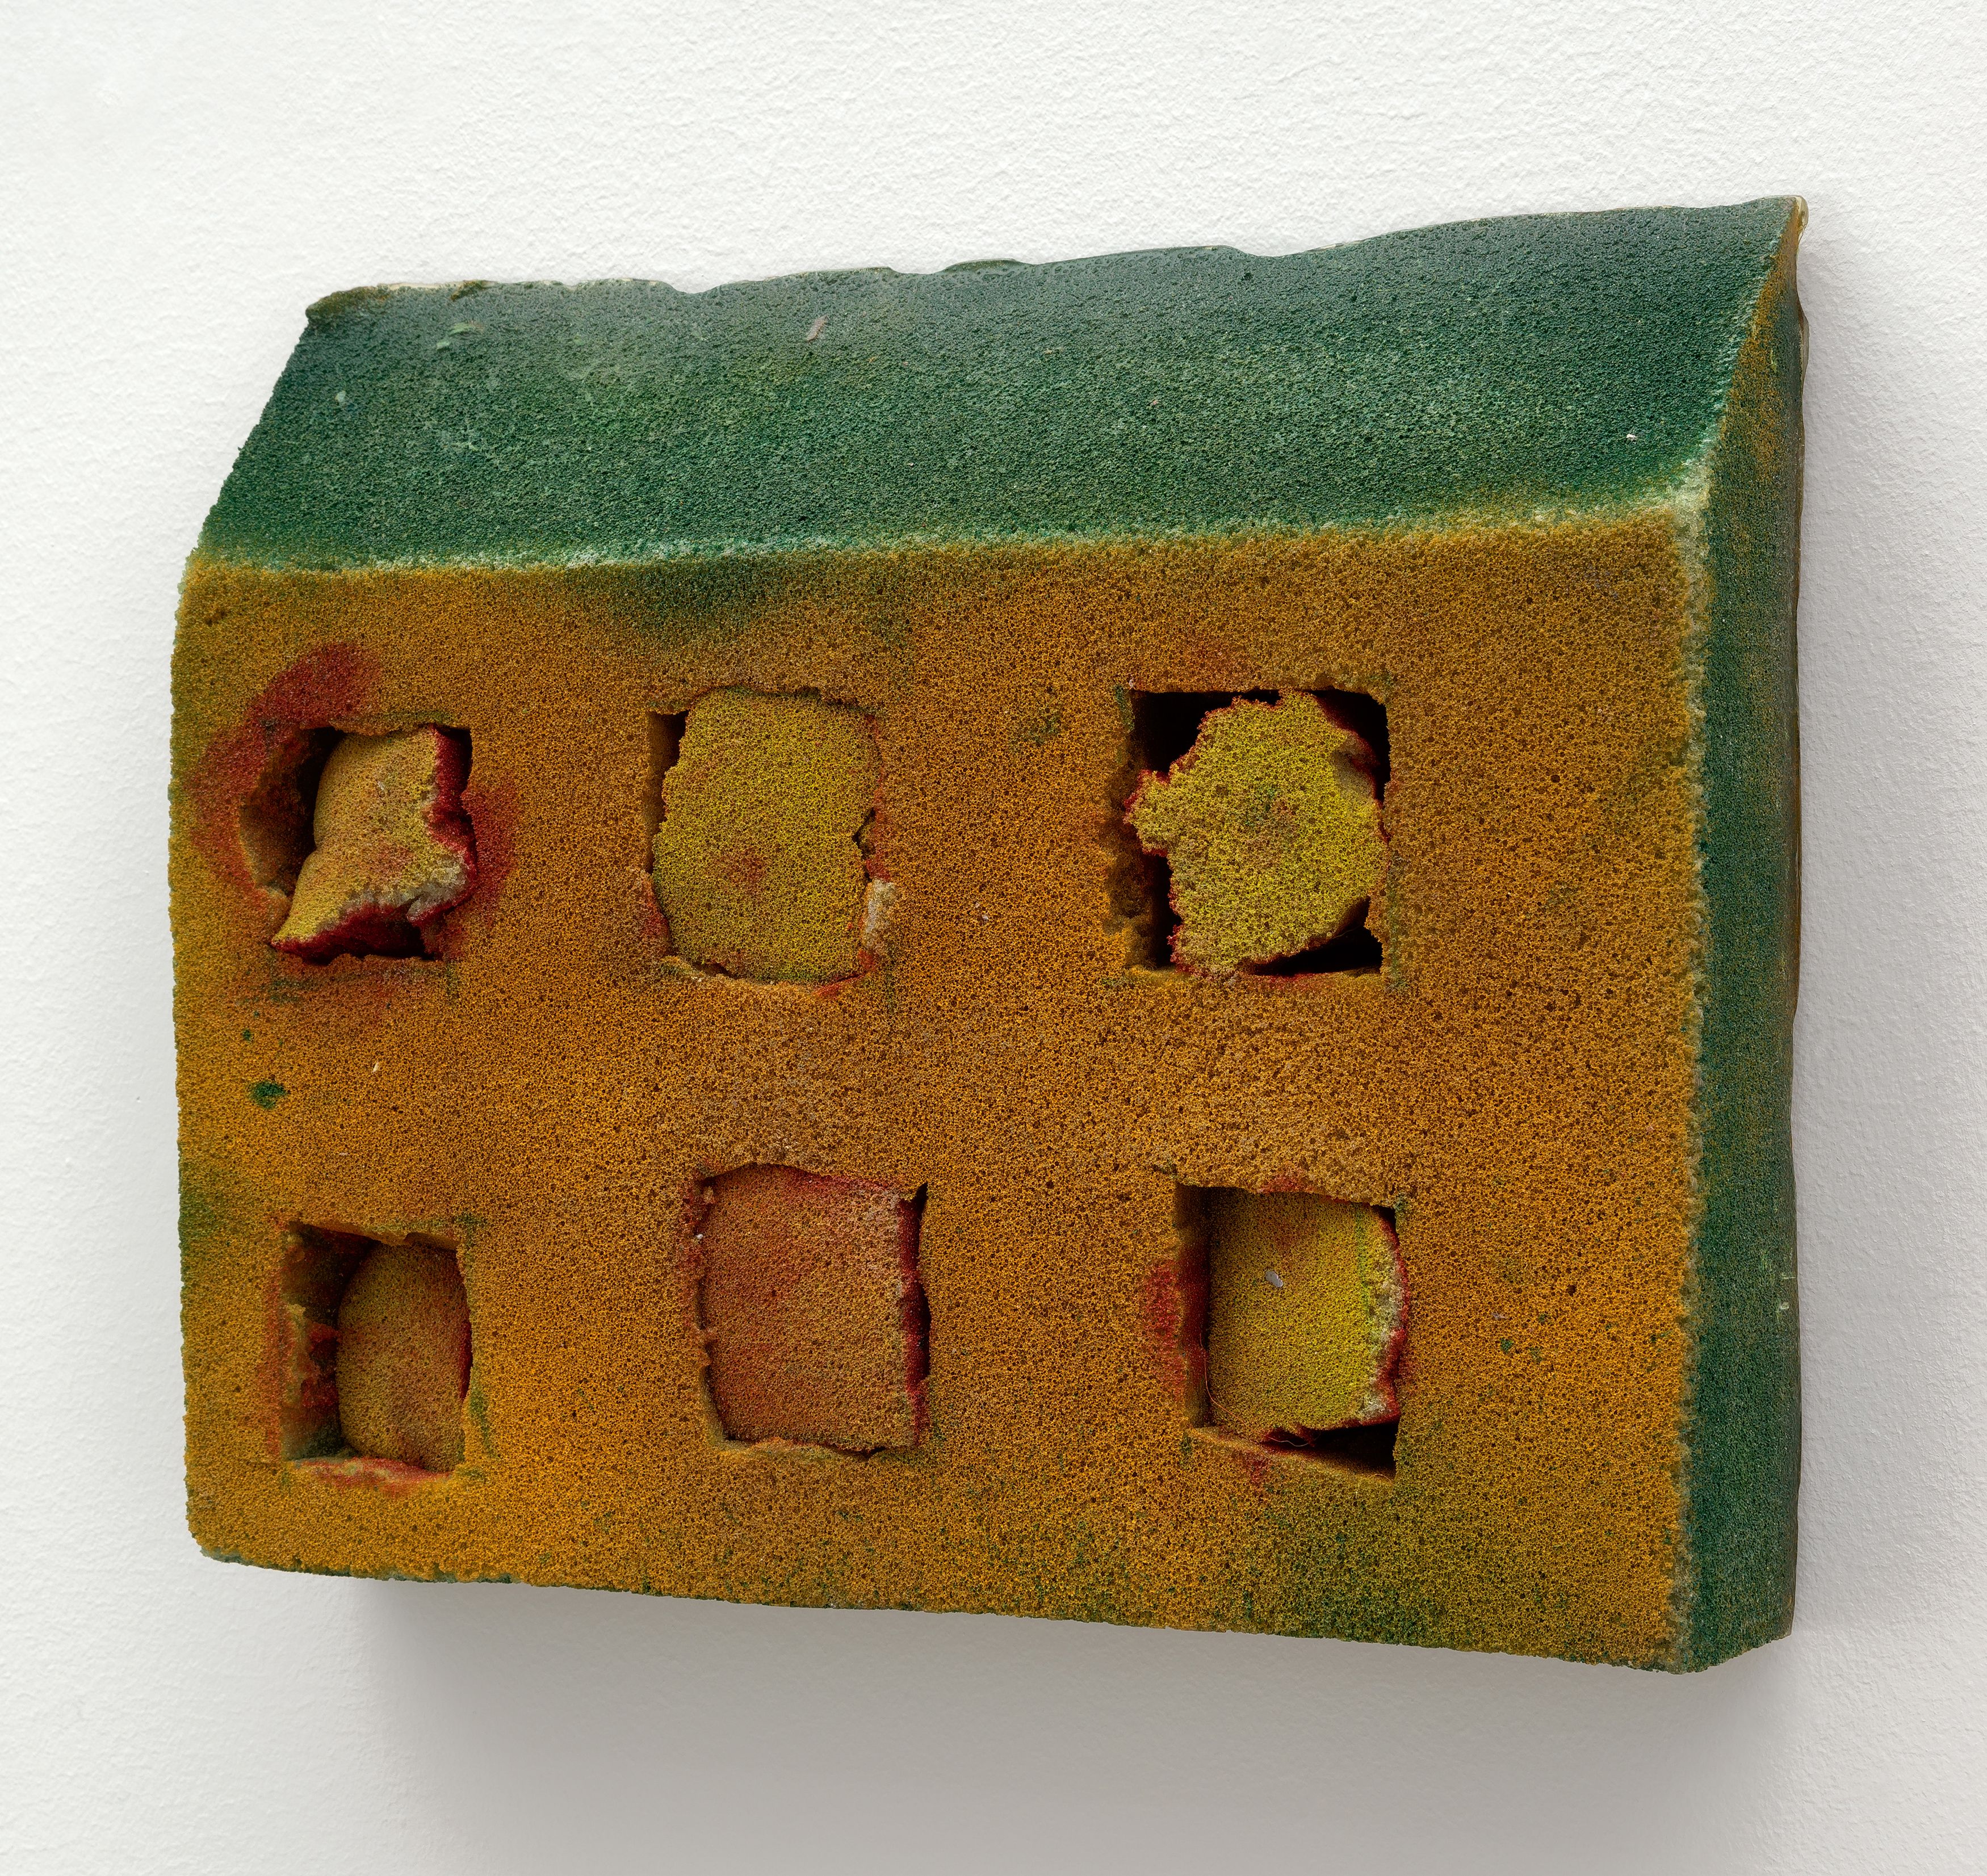 Gabriel Hartley, House, 2016, foam, resin, pigment, 9 4⁄5 × 11 7⁄10 × 2 2⁄5 in. (24.89 × 29.72 × 6.10 cm.) 